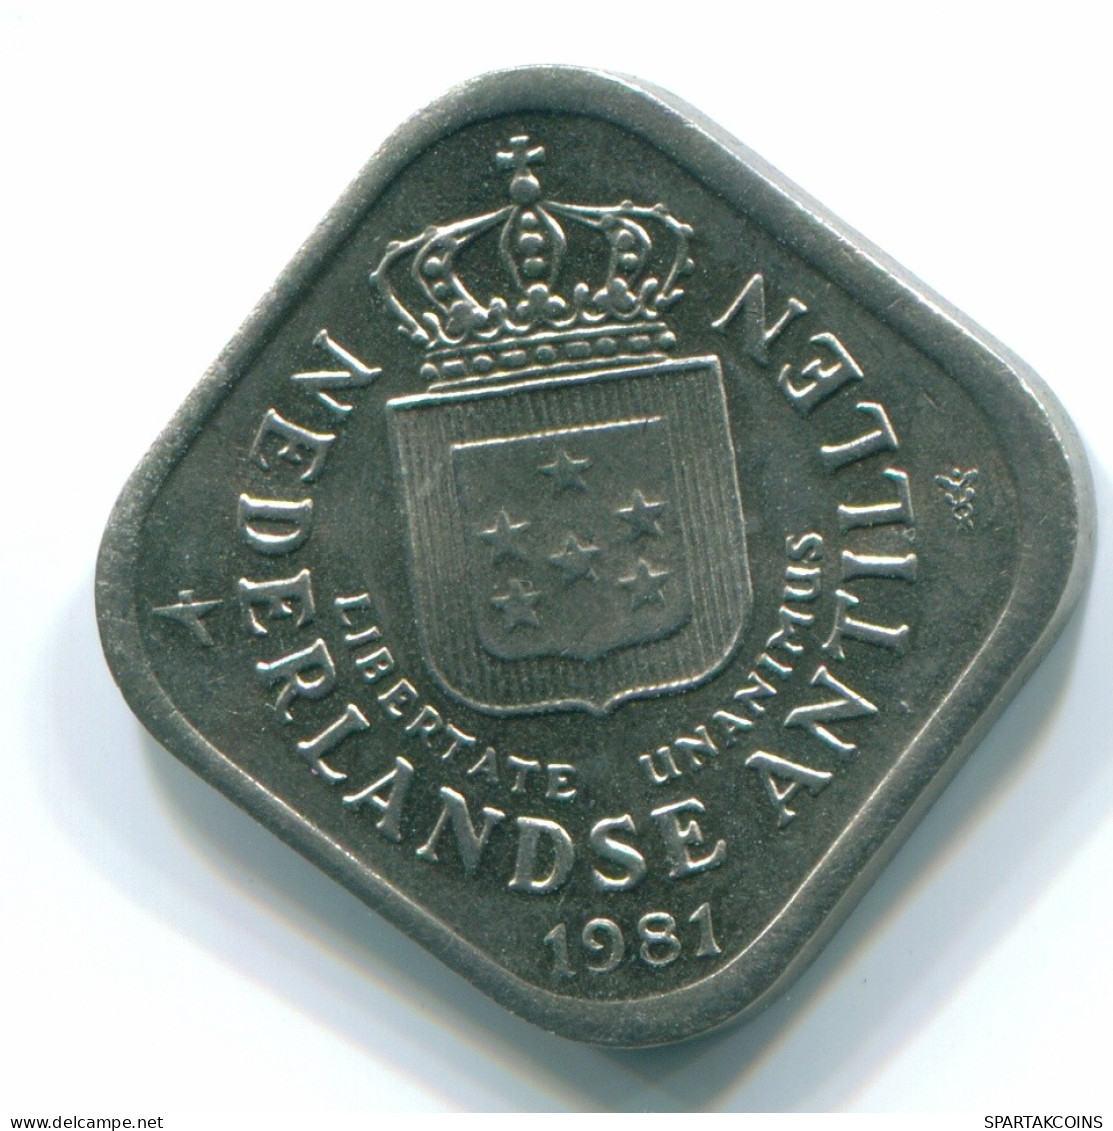 5 CENTS 1981 NIEDERLÄNDISCHE ANTILLEN Nickel Koloniale Münze #S12342.D.A - Antillas Neerlandesas